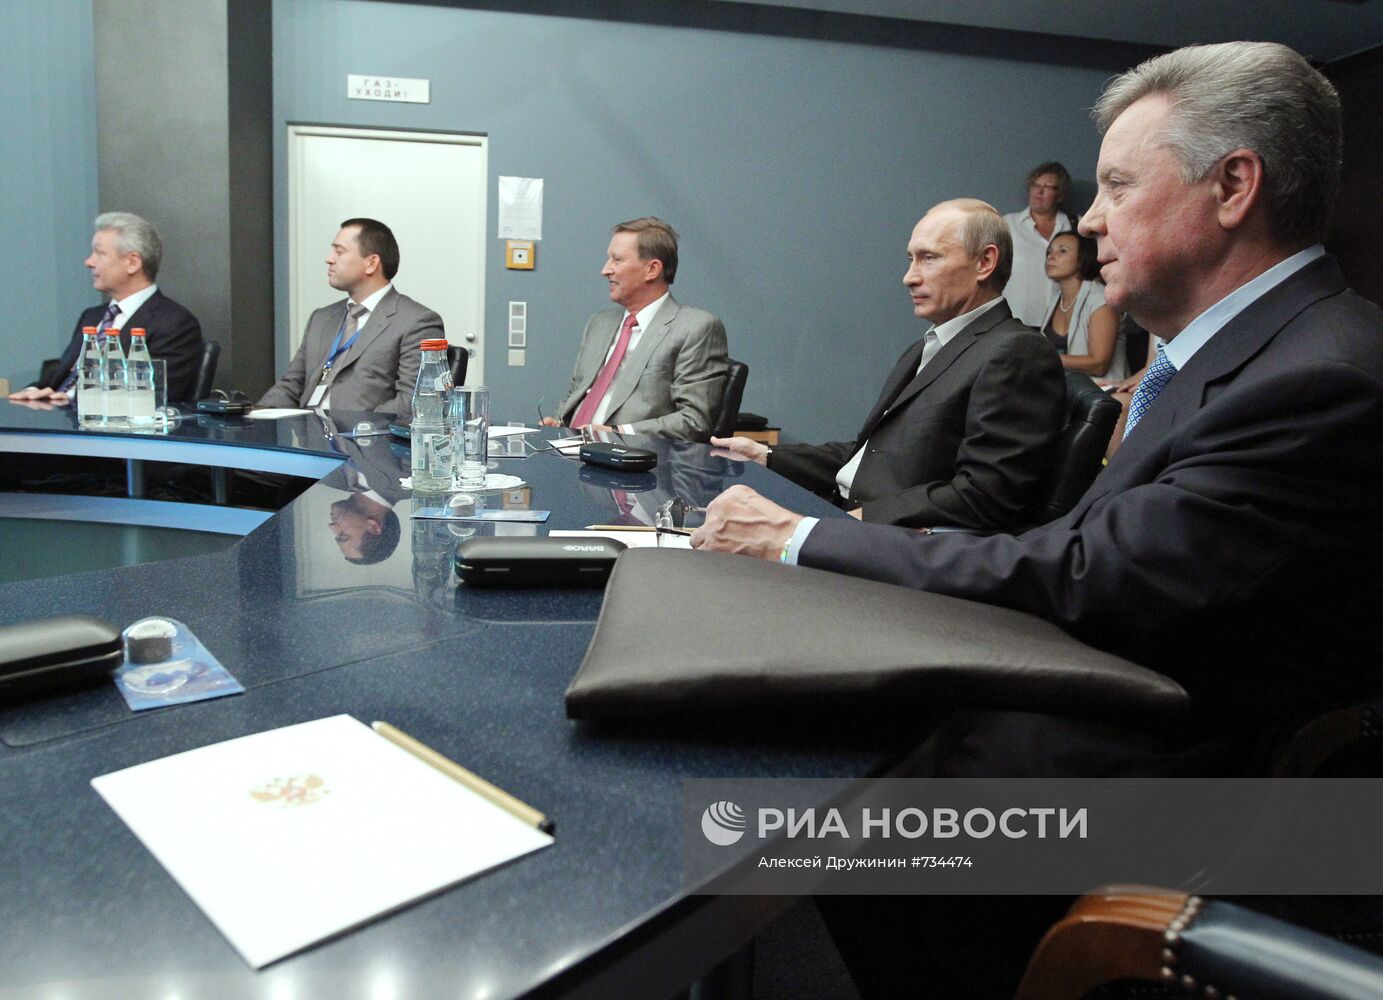 Владимир Путин посетил ООО "Газпром-ВНИИГАЗ"